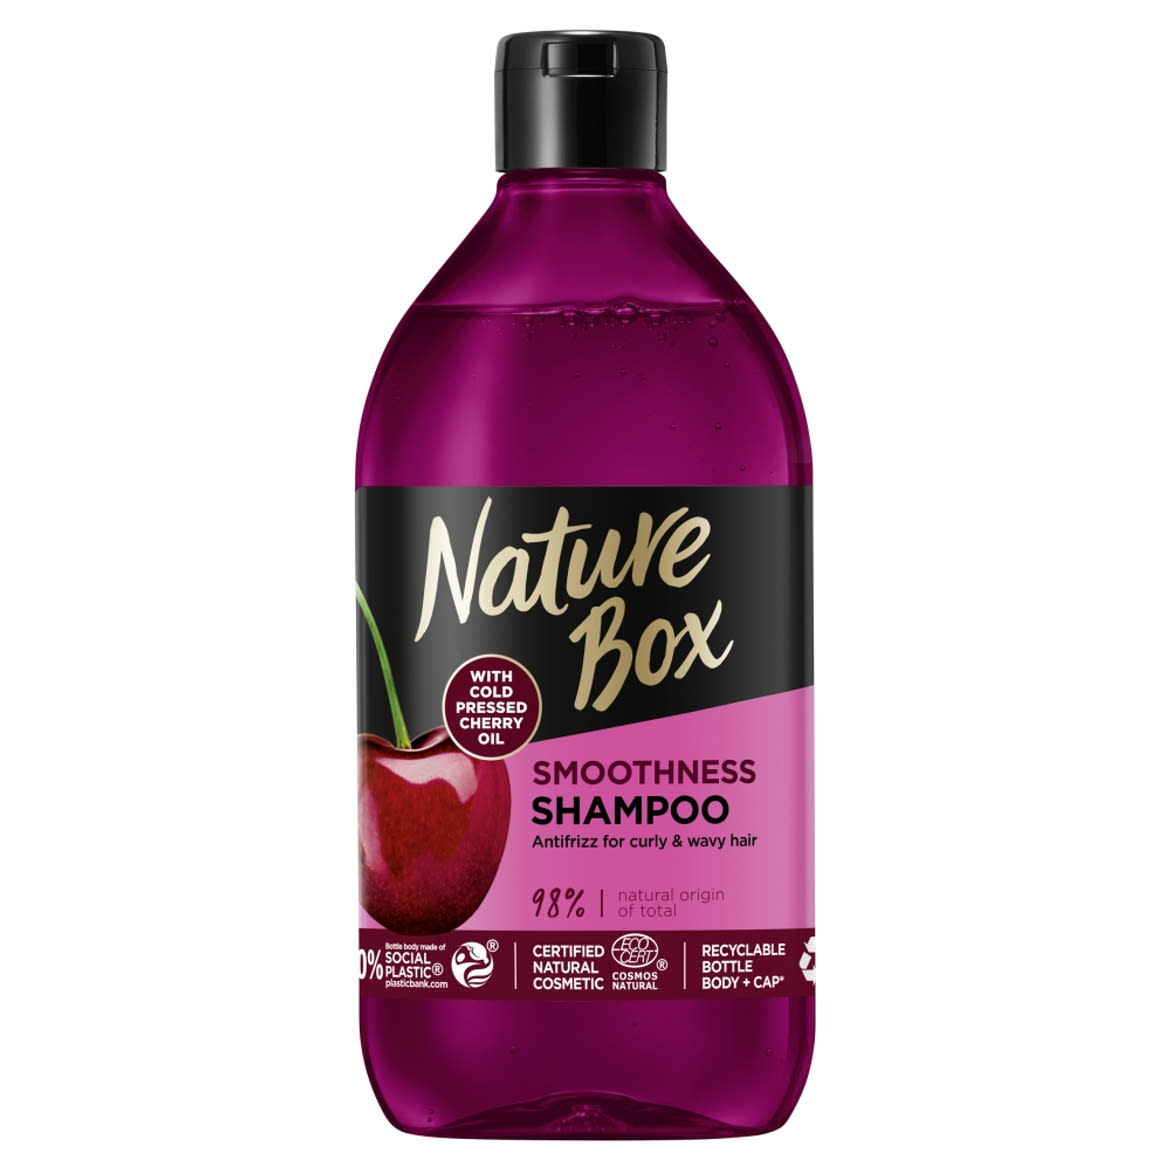 Nature Box sampon a puha hajért hidegen préselt cseresznye olajjal